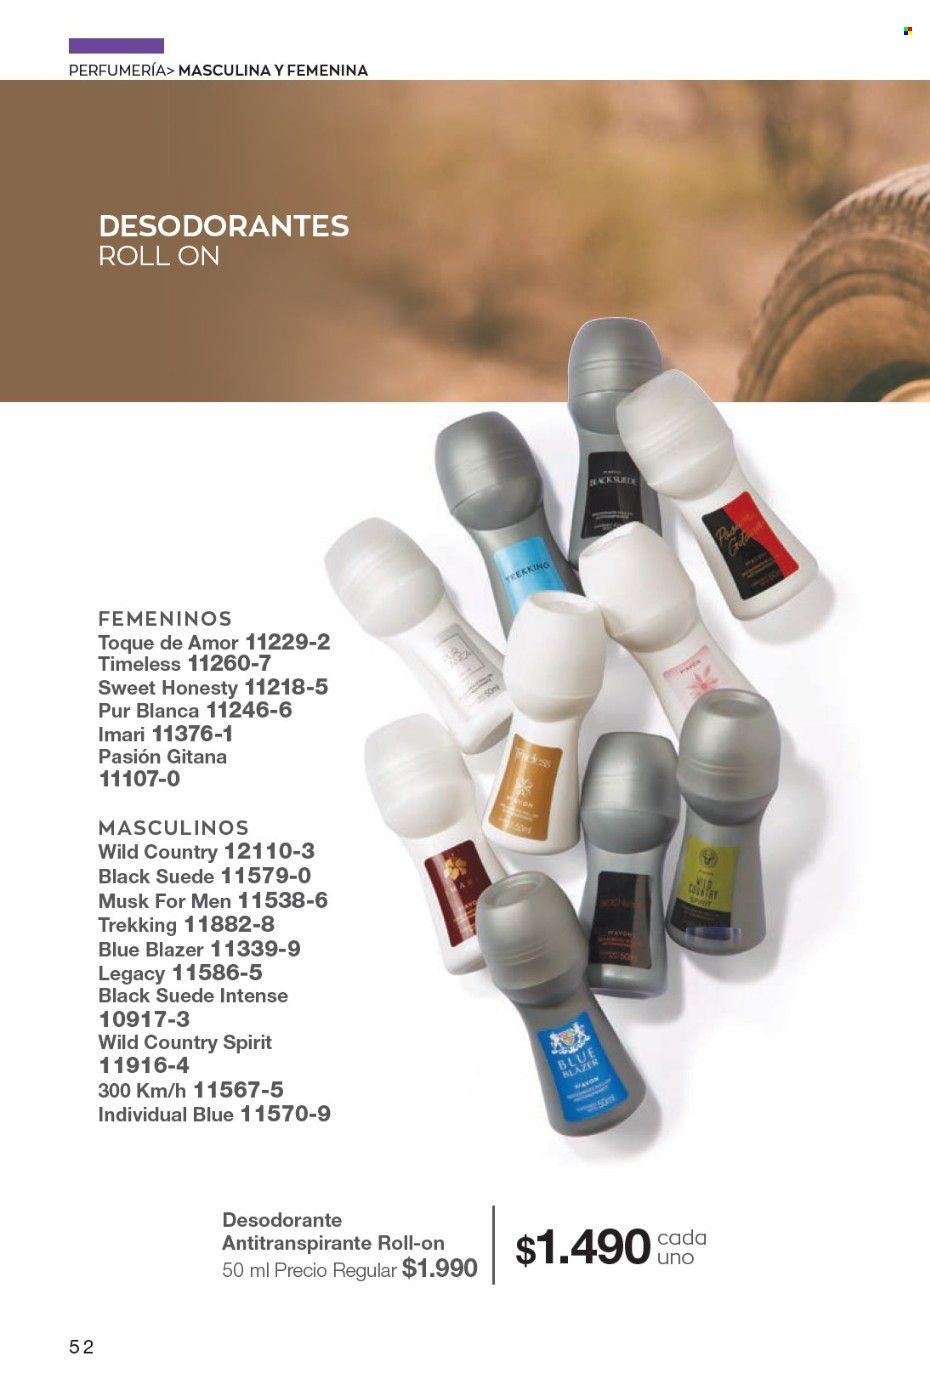 thumbnail - Catálogo Avon - Ventas - desodorante de bola, Imari, Pur Blanca, desodorante, antitranspirante. Página 52.